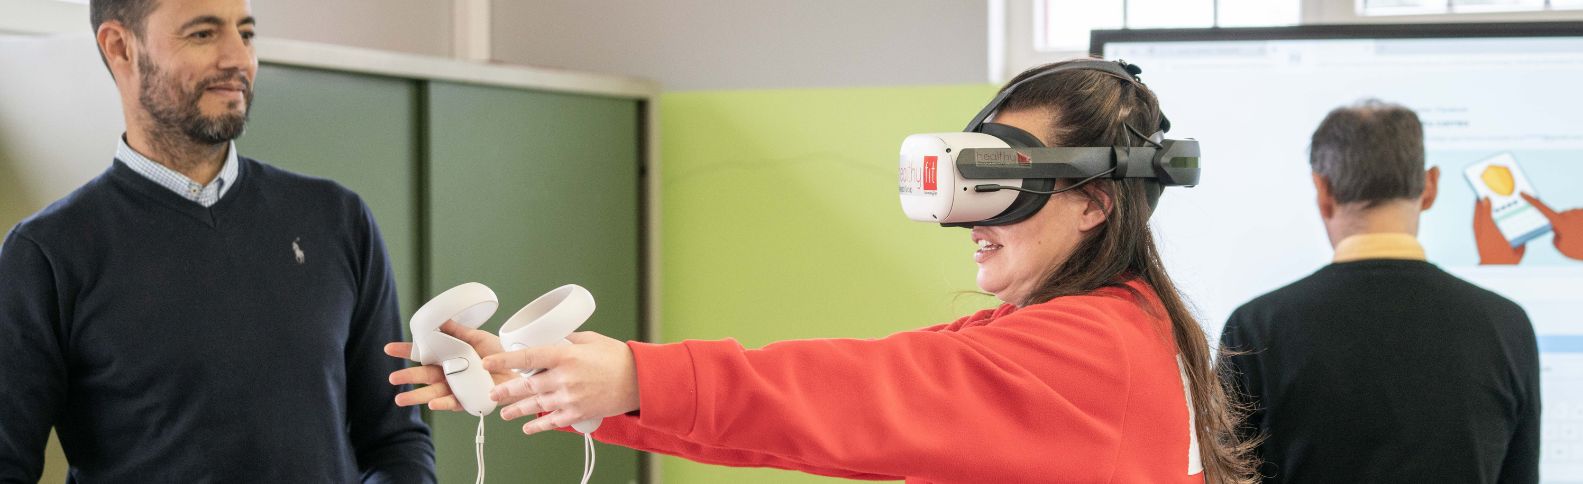 Realidad virtual como terapia para pacientes con daño cerebral adquirido